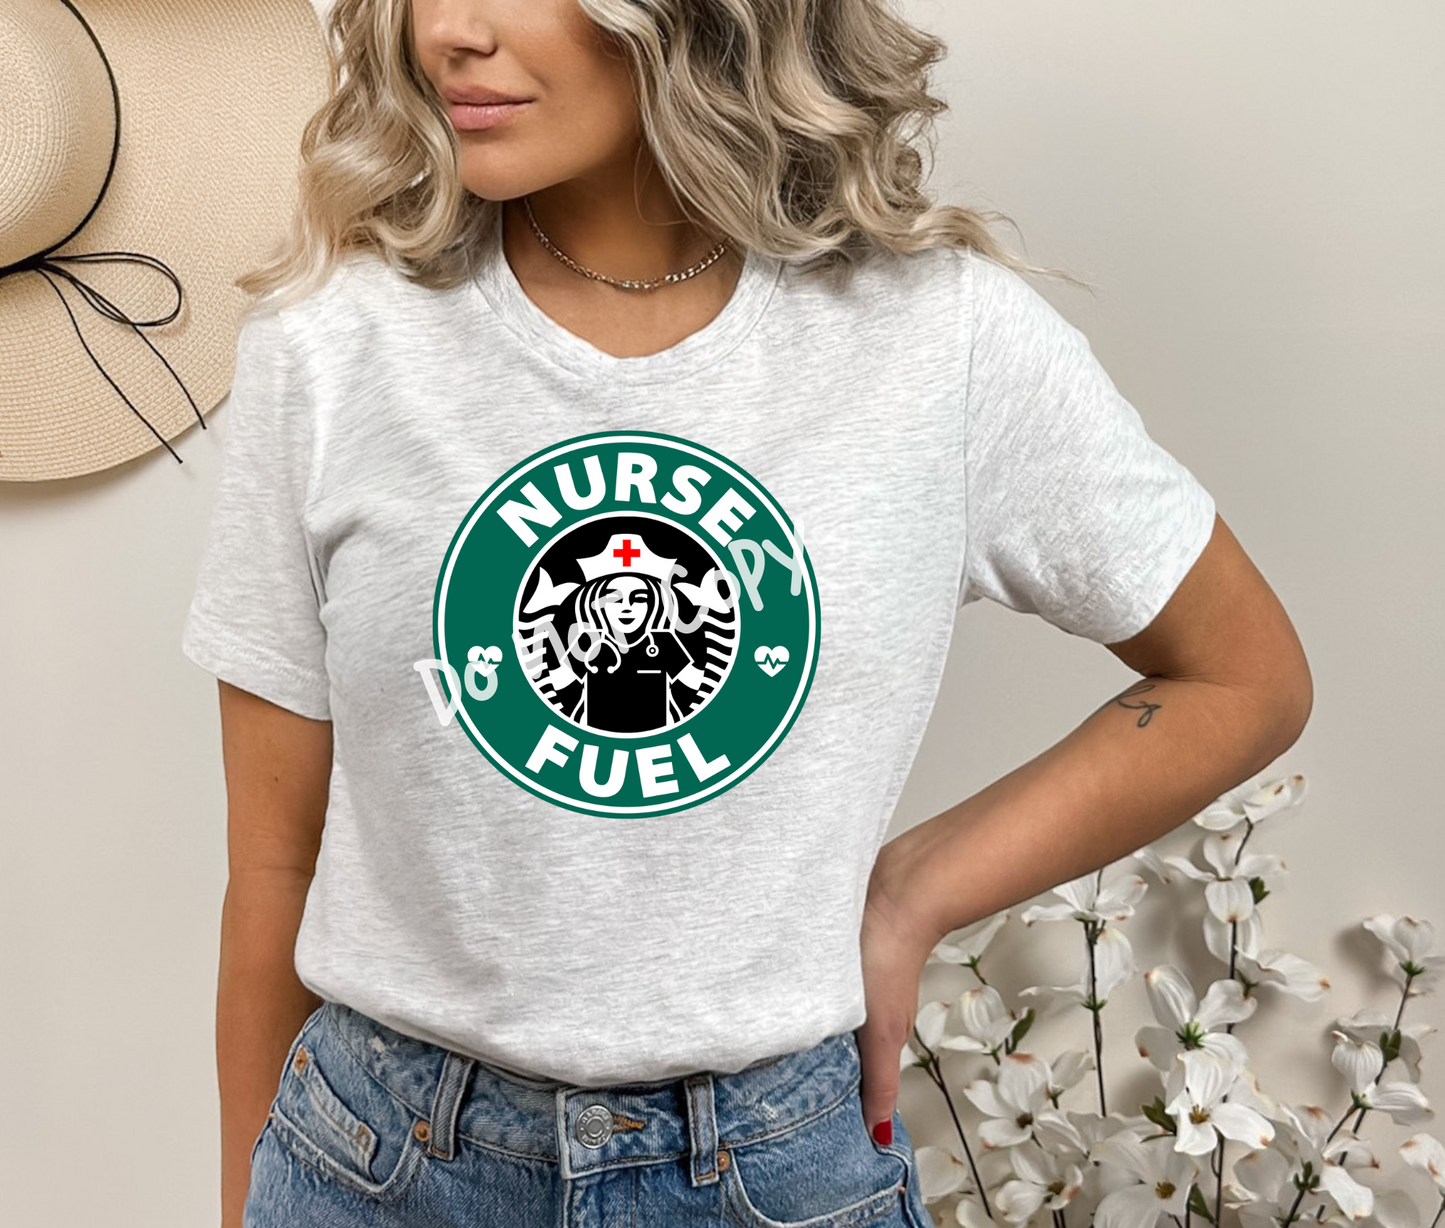 Nurse Fuel Tee